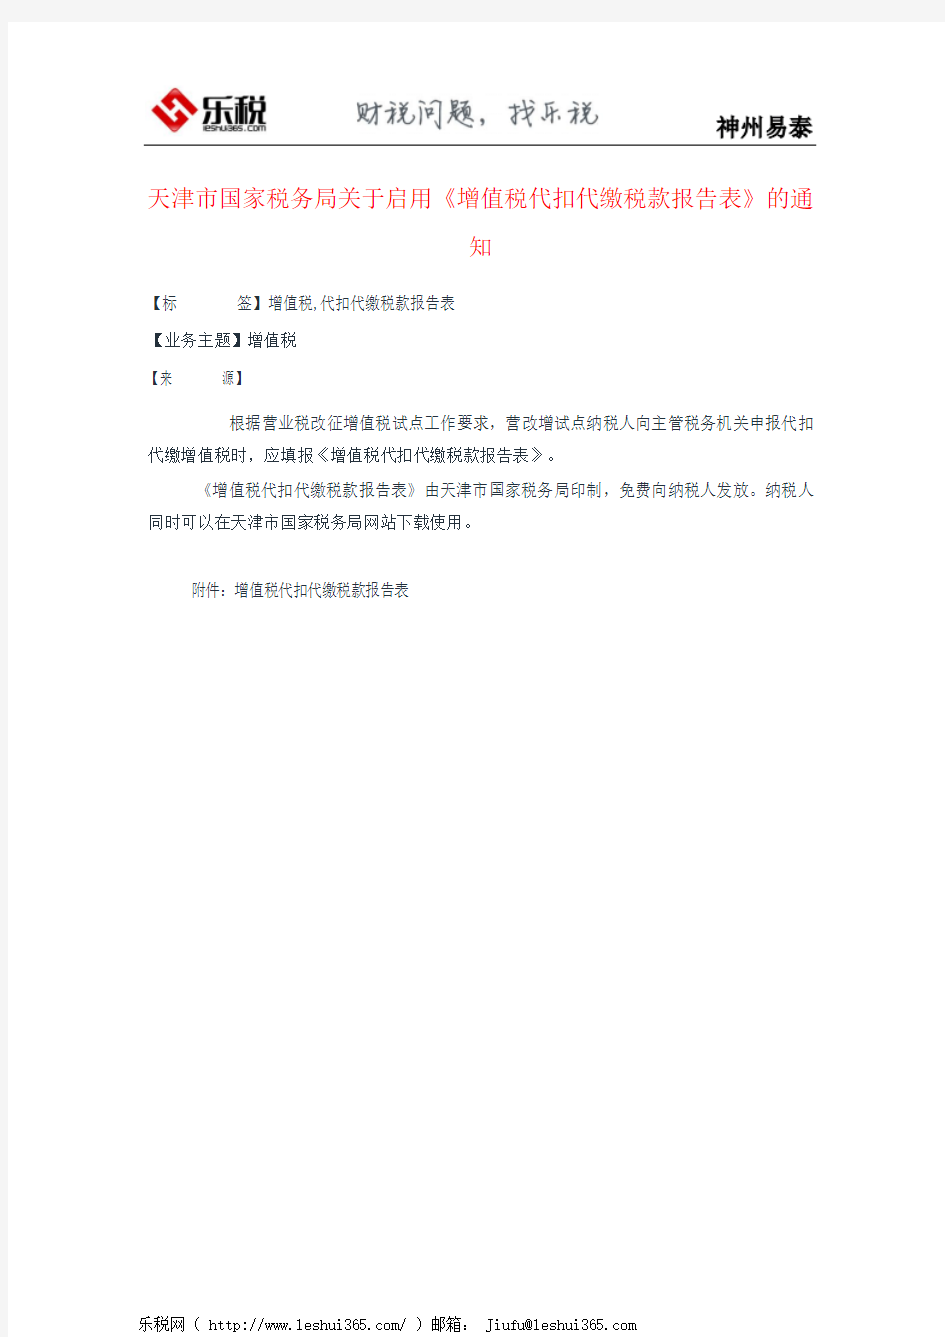 天津市国家税务局关于启用《增值税代扣代缴税款报告表》的通知